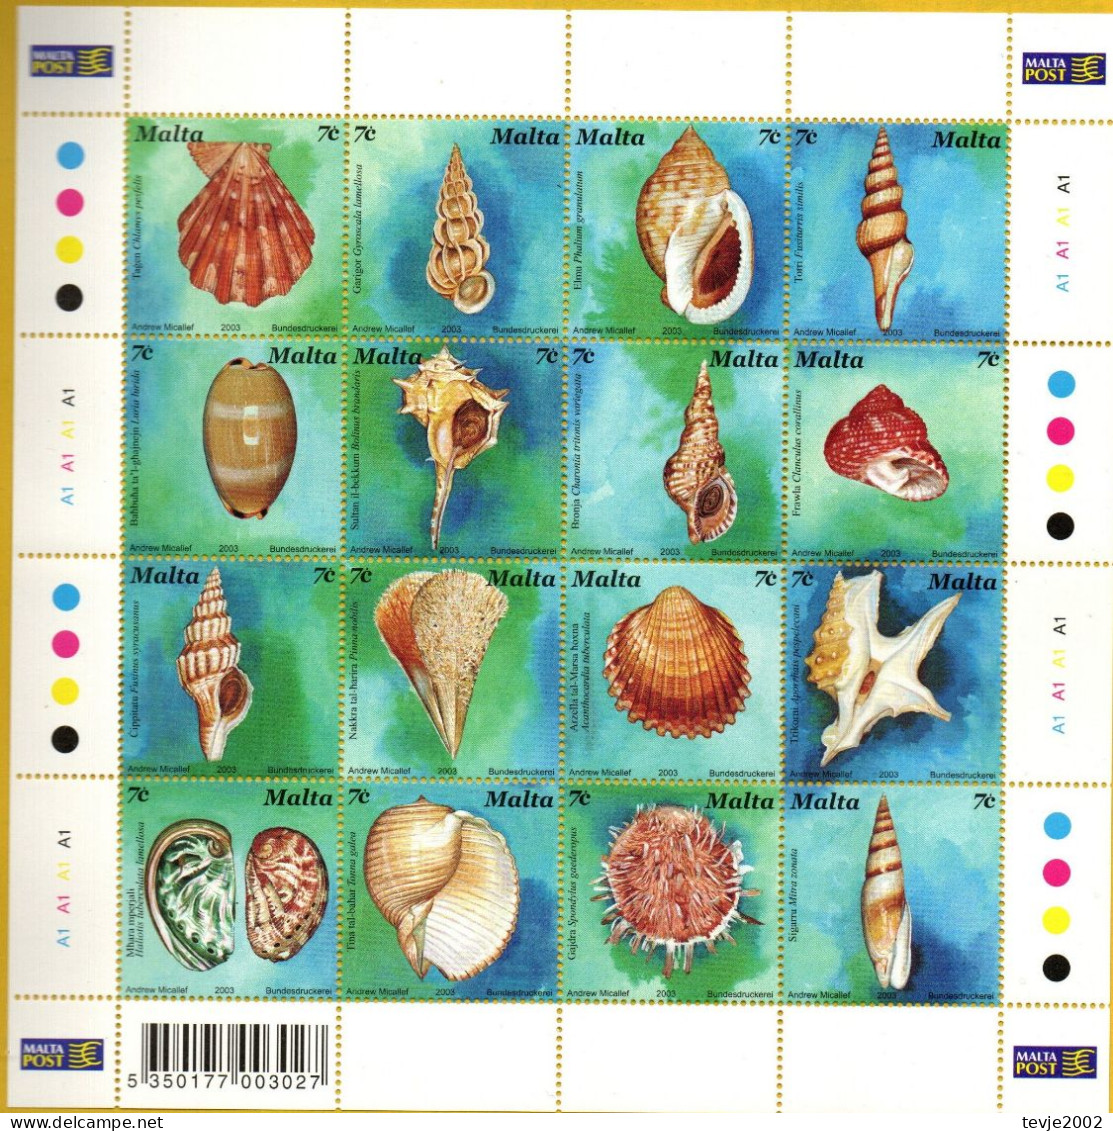 Malta 2003 - Mi.Nr. 1286 - 1301 Kleinbogen - Postfrisch MNH - Tiere Animals Muscheln Shellfish - Coquillages